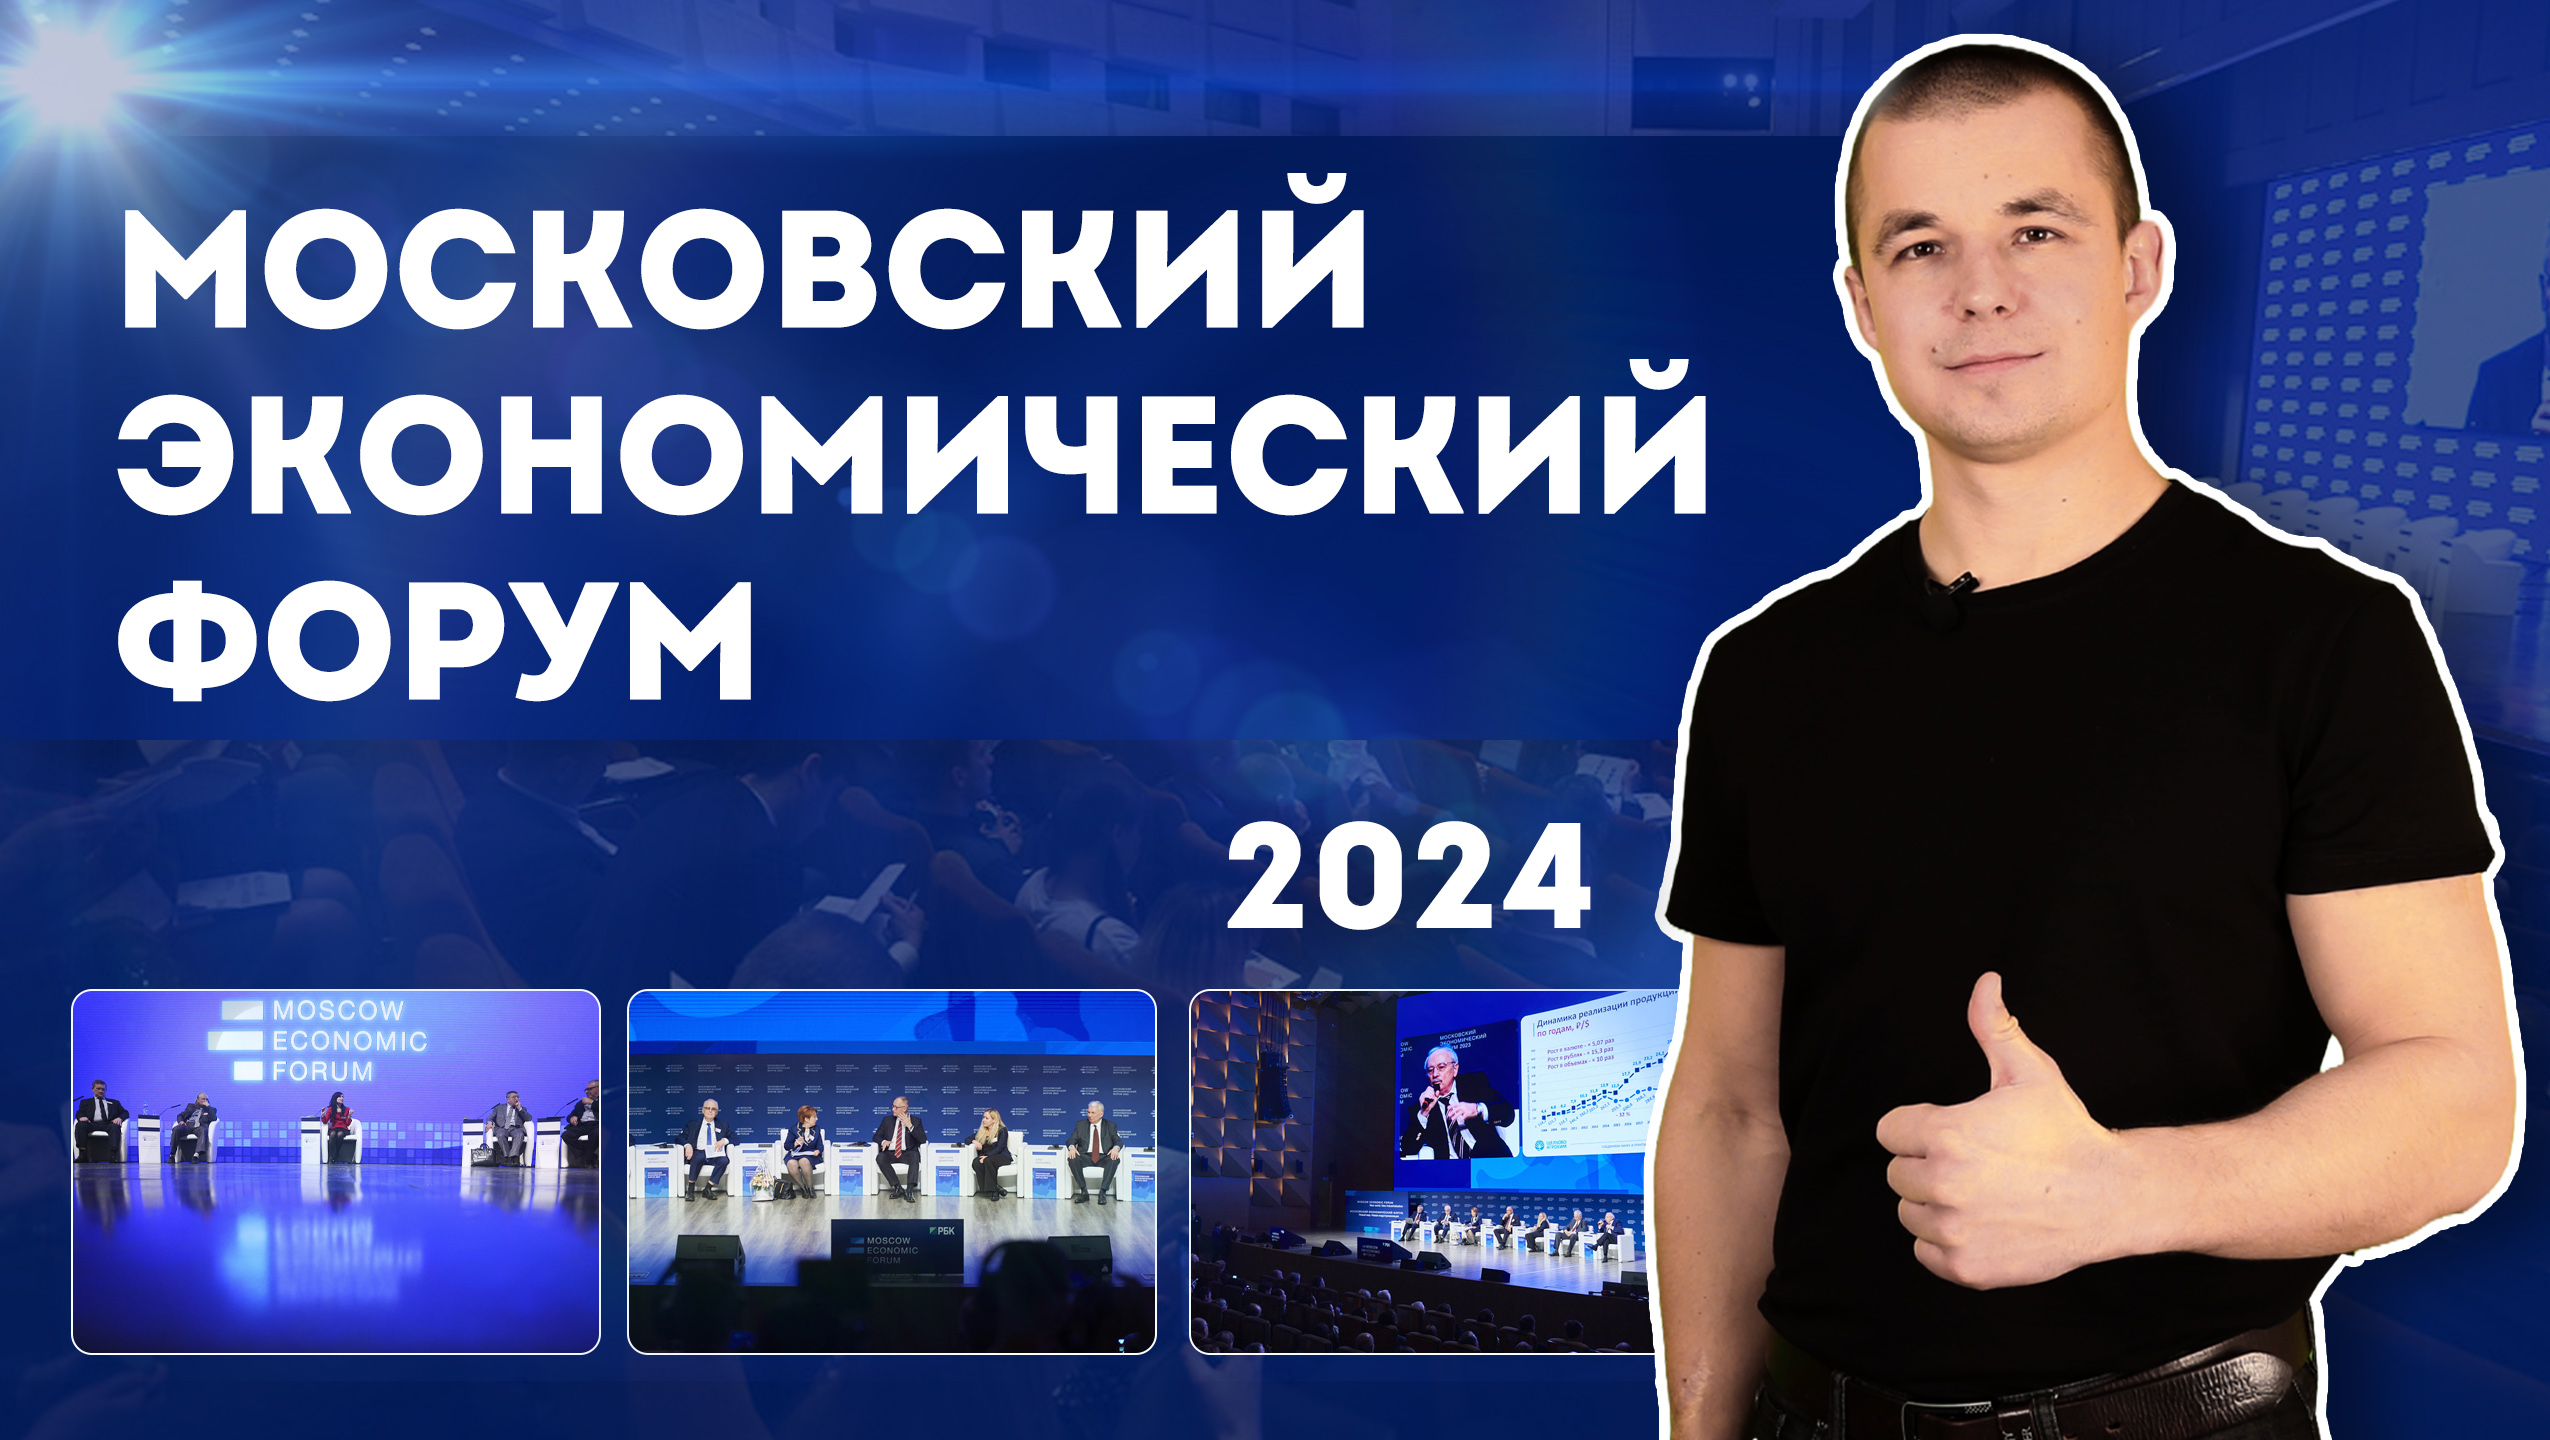 Московский Экономический Форум, 2024. Как это будет?